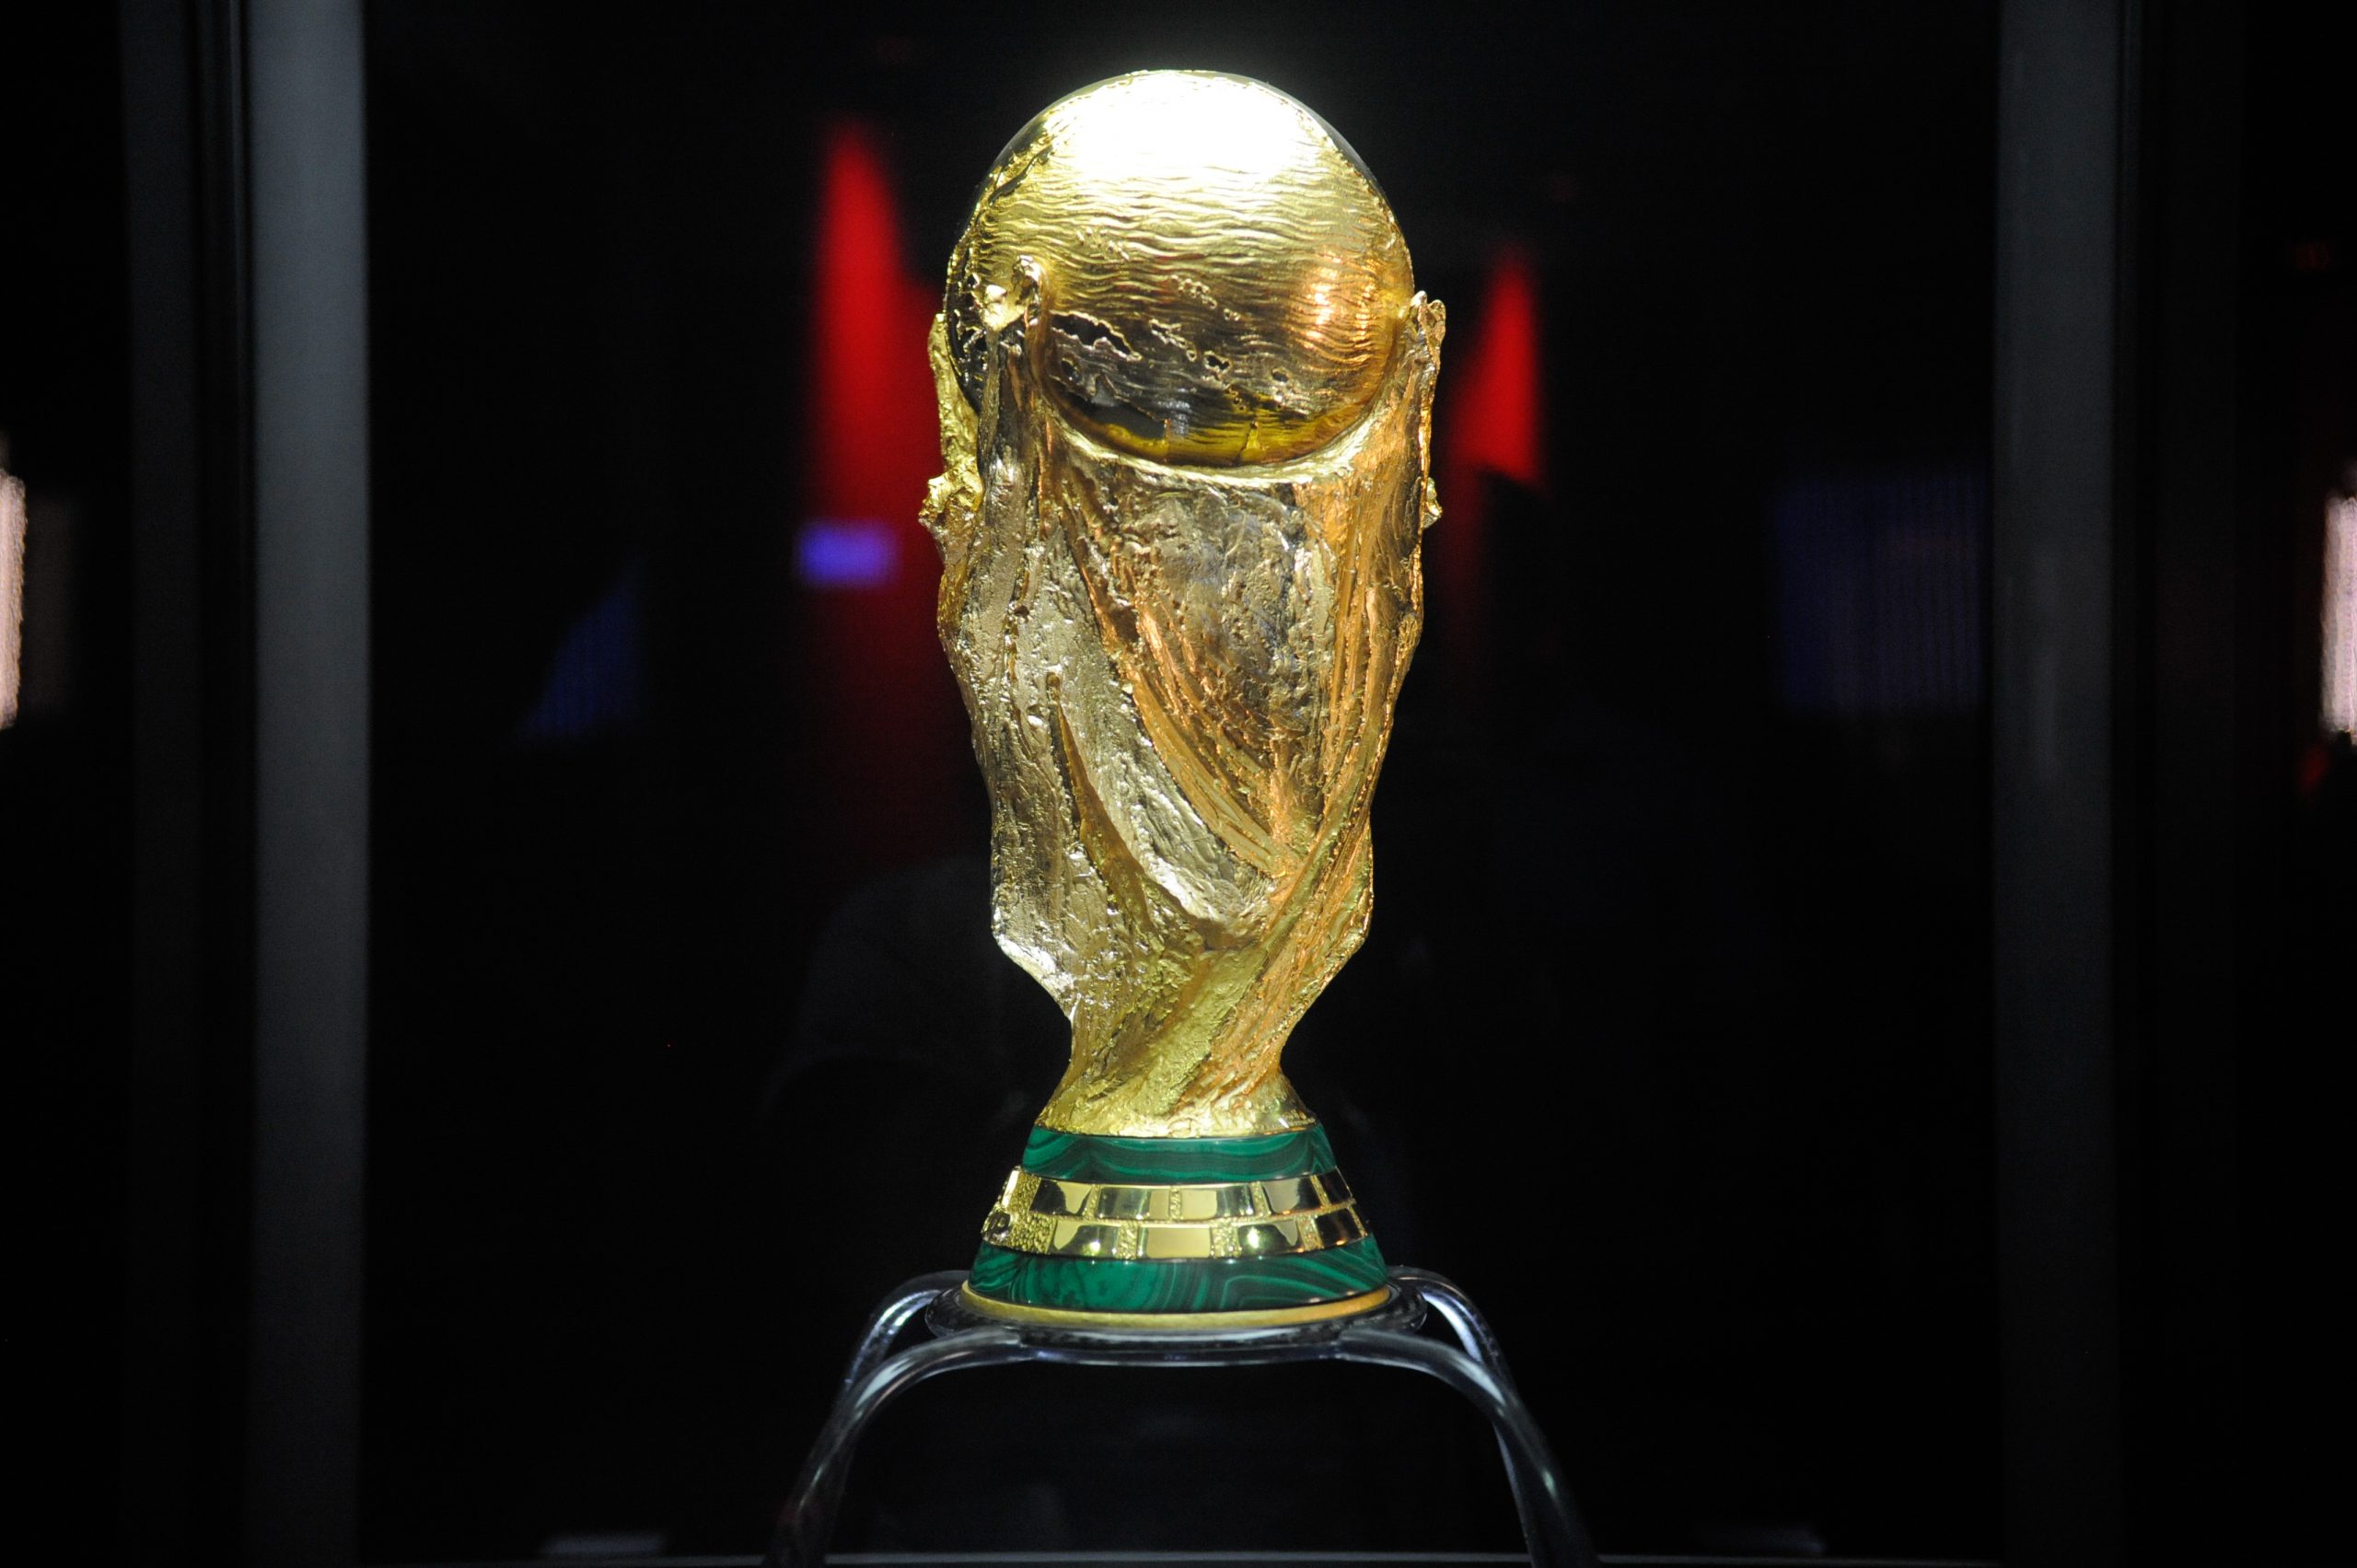 Confira a tabela atualizada da Copa do Mundo 2022 - RIC Mais